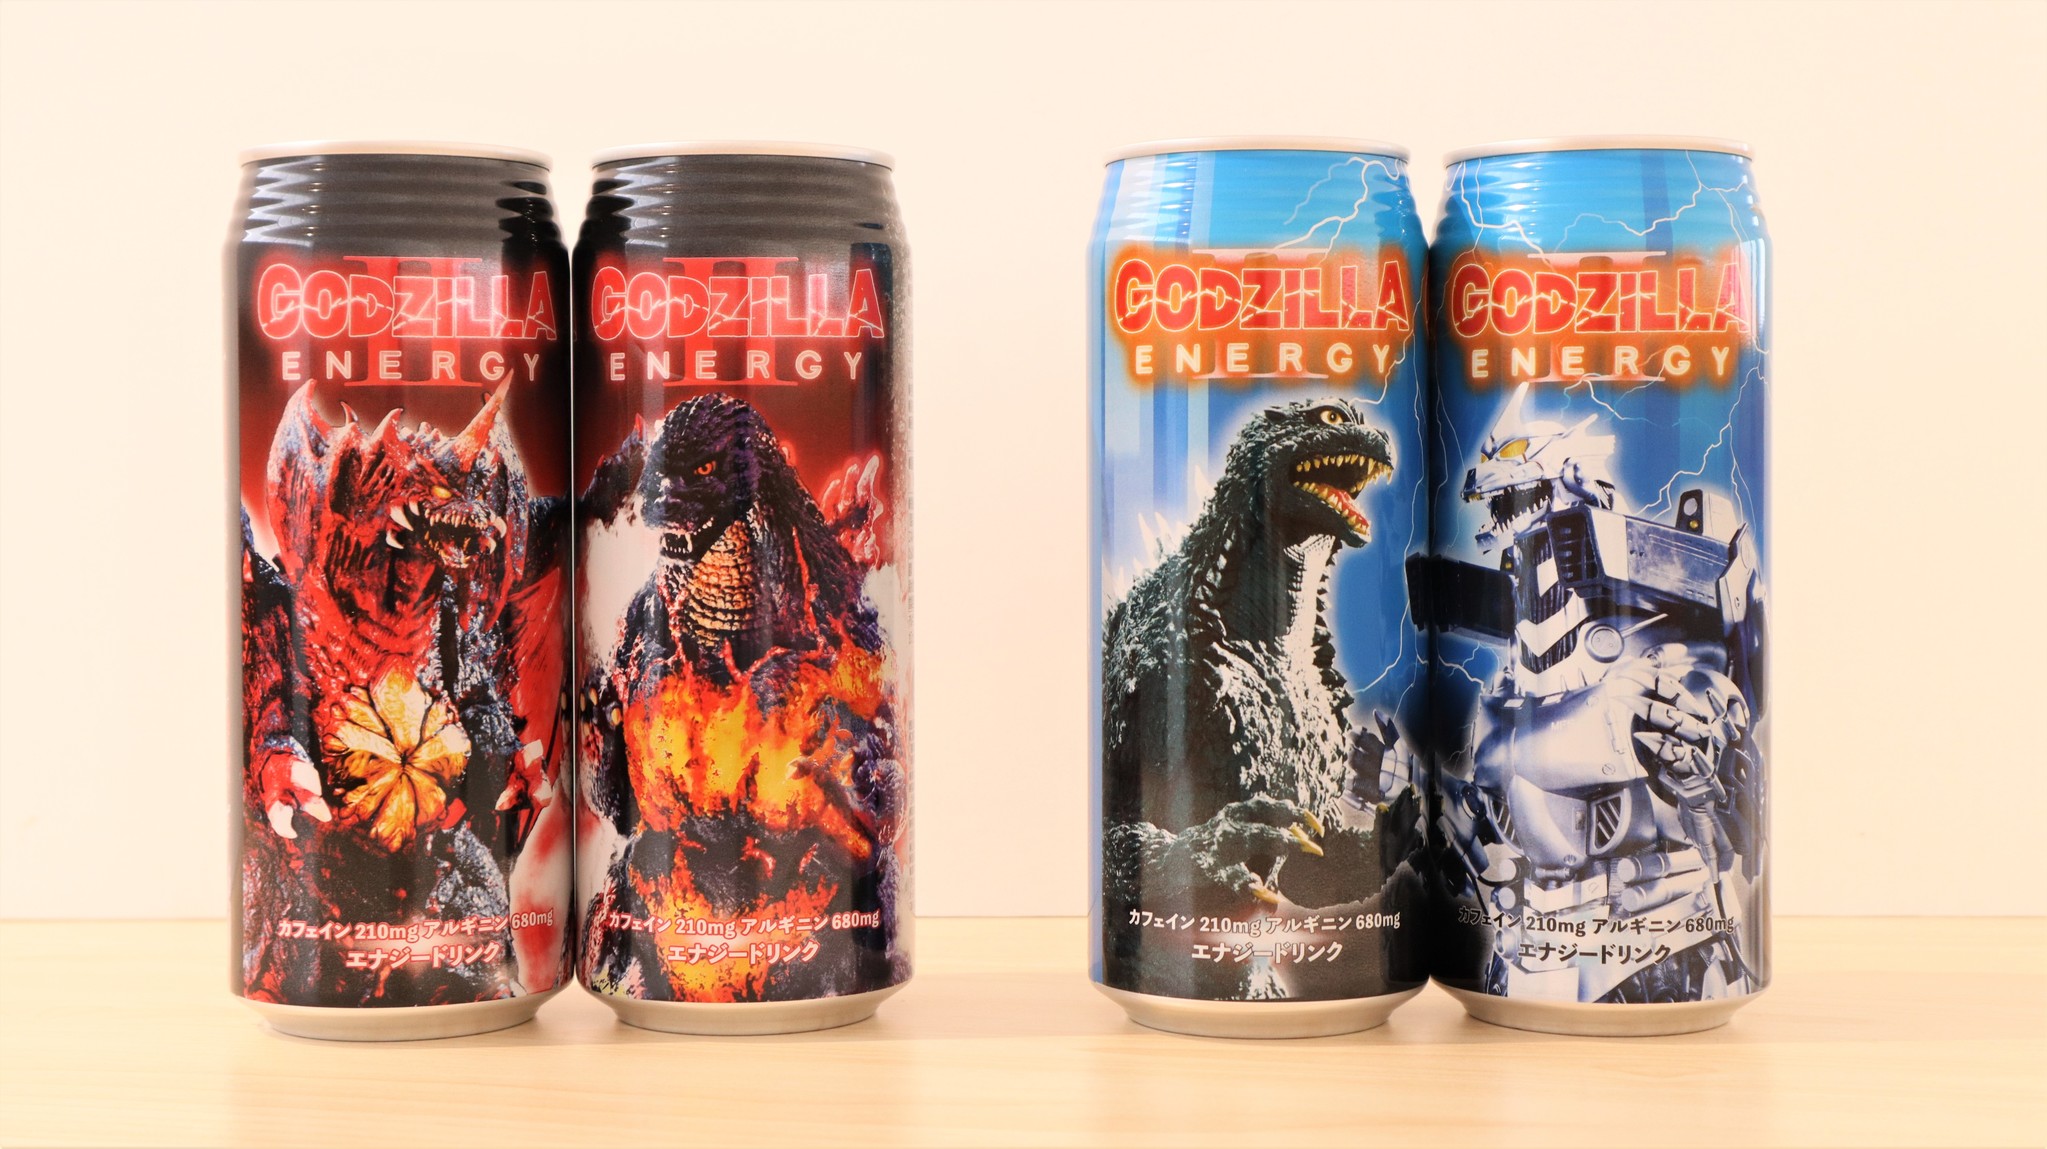 怪獣王 ゴジラのエナジードリンク第二弾 Godzilla Energy 人気の バーニングゴジラ 3式機龍 の２種類のパッケージで登場 株式会社チェリオコーポレーションのプレスリリース